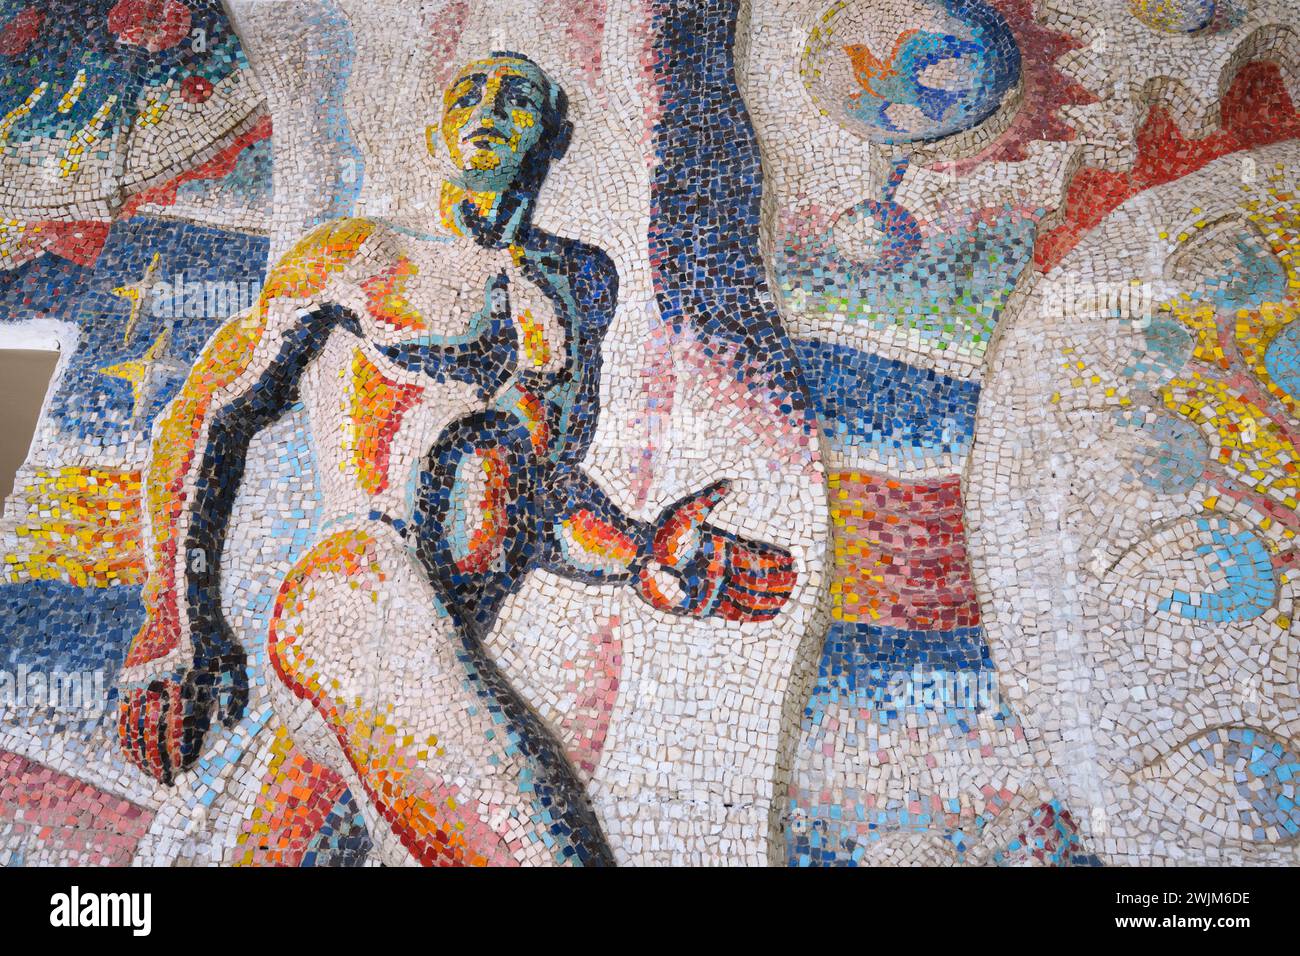 Der Vordereingang des Museums hat ein großes Mosaik, Fliesen Wandgemälde mit einem Evolutionsthema. Details eines körperlichen, muskulösen, modernen Mannes. An der biologischen Mus Stockfoto